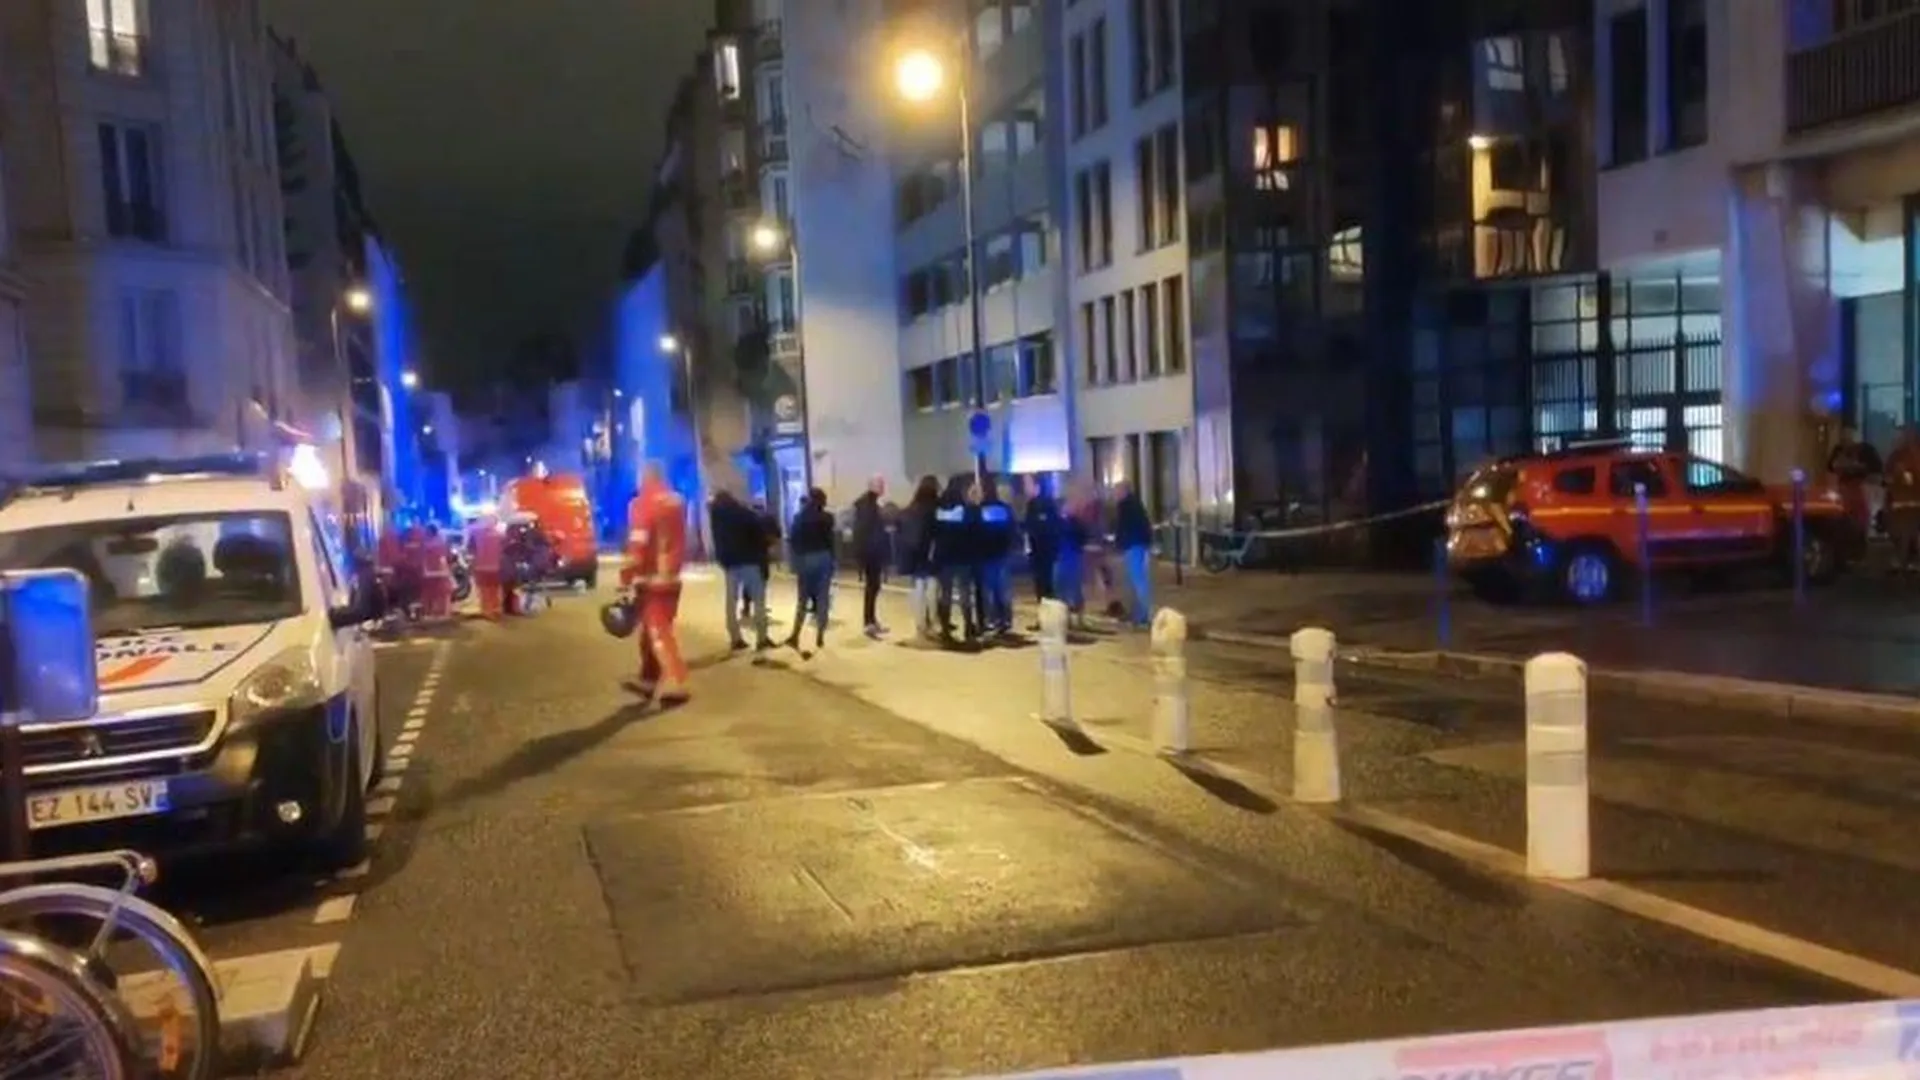 Три человека погибли в Париже при взрыве в многоэтажном доме